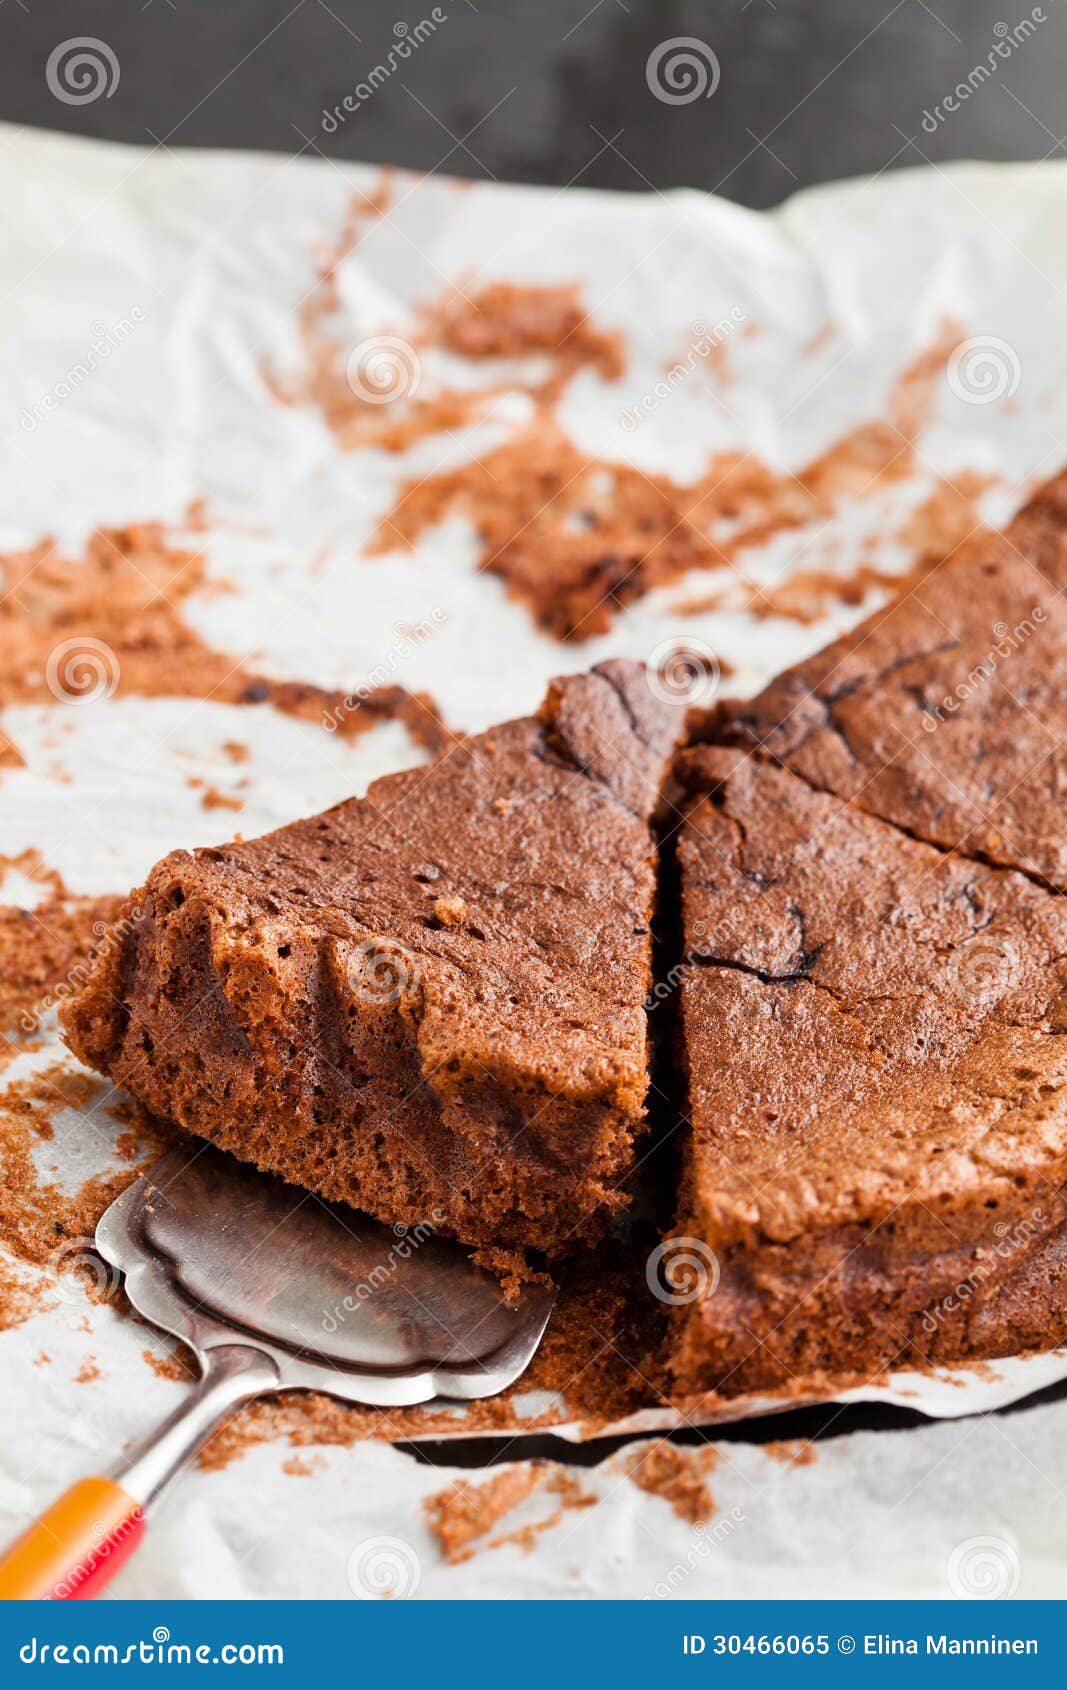 巧克力夹心蛋糕-切片 库存照片. 图片 包括有 美食, 剪切, 甜点, 食物, 奶油, 款待, 黑暗, 烘烤 - 30878026